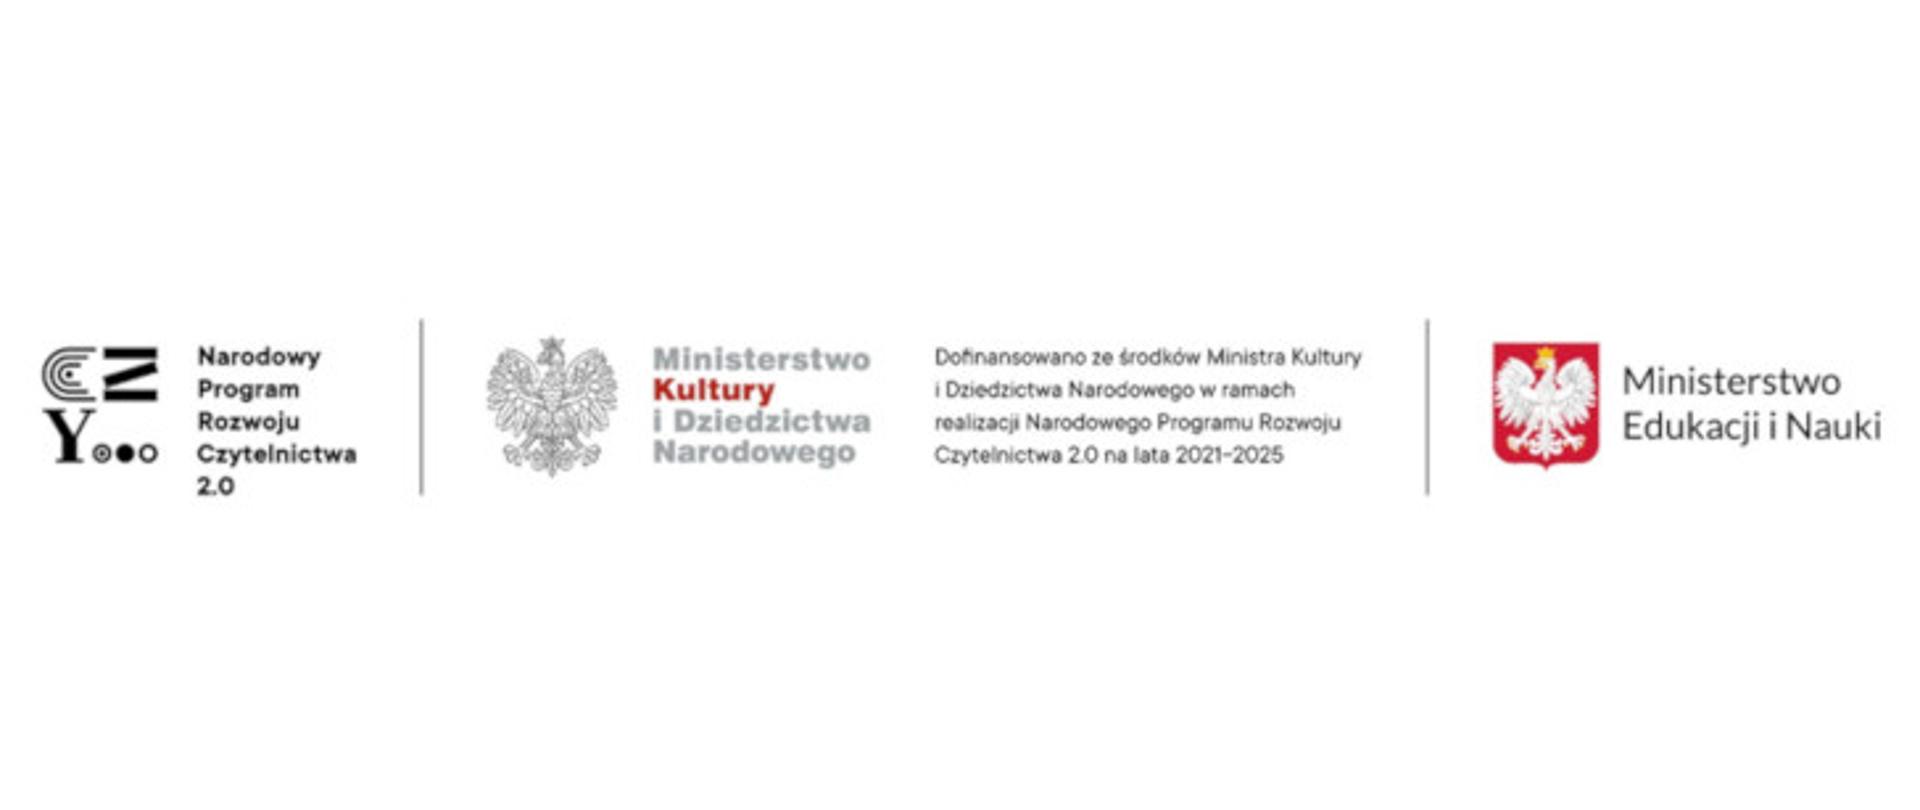 Logotypy Narodowy Program Rozwoju Czytelnictwa 2.0, Ministerstwo Kultury i Dziedzictwa Narodowego, Ministerstwo Edukacji i Nauki